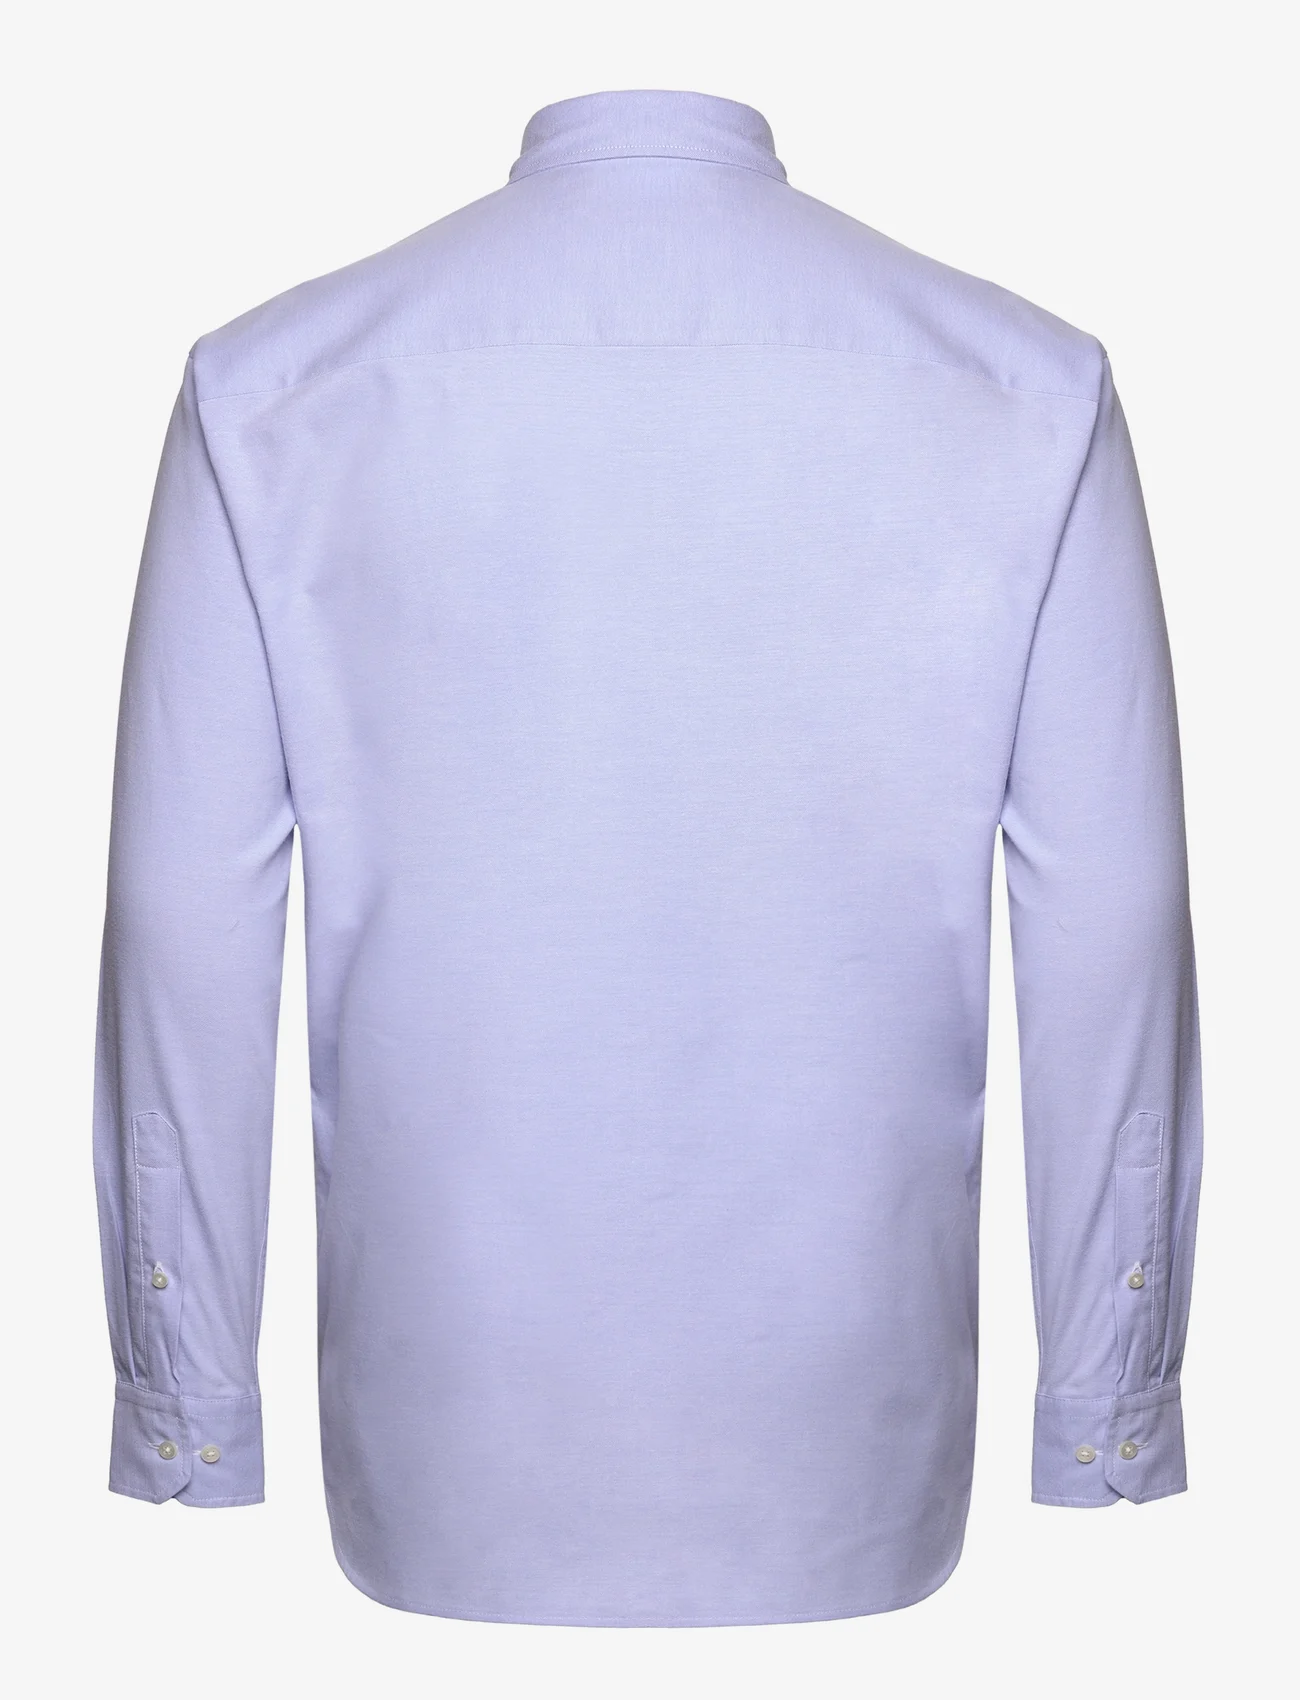 Bosweel Shirts Est. 1937 - Regular fit Mens shirt - basic skjorter - light blue - 1